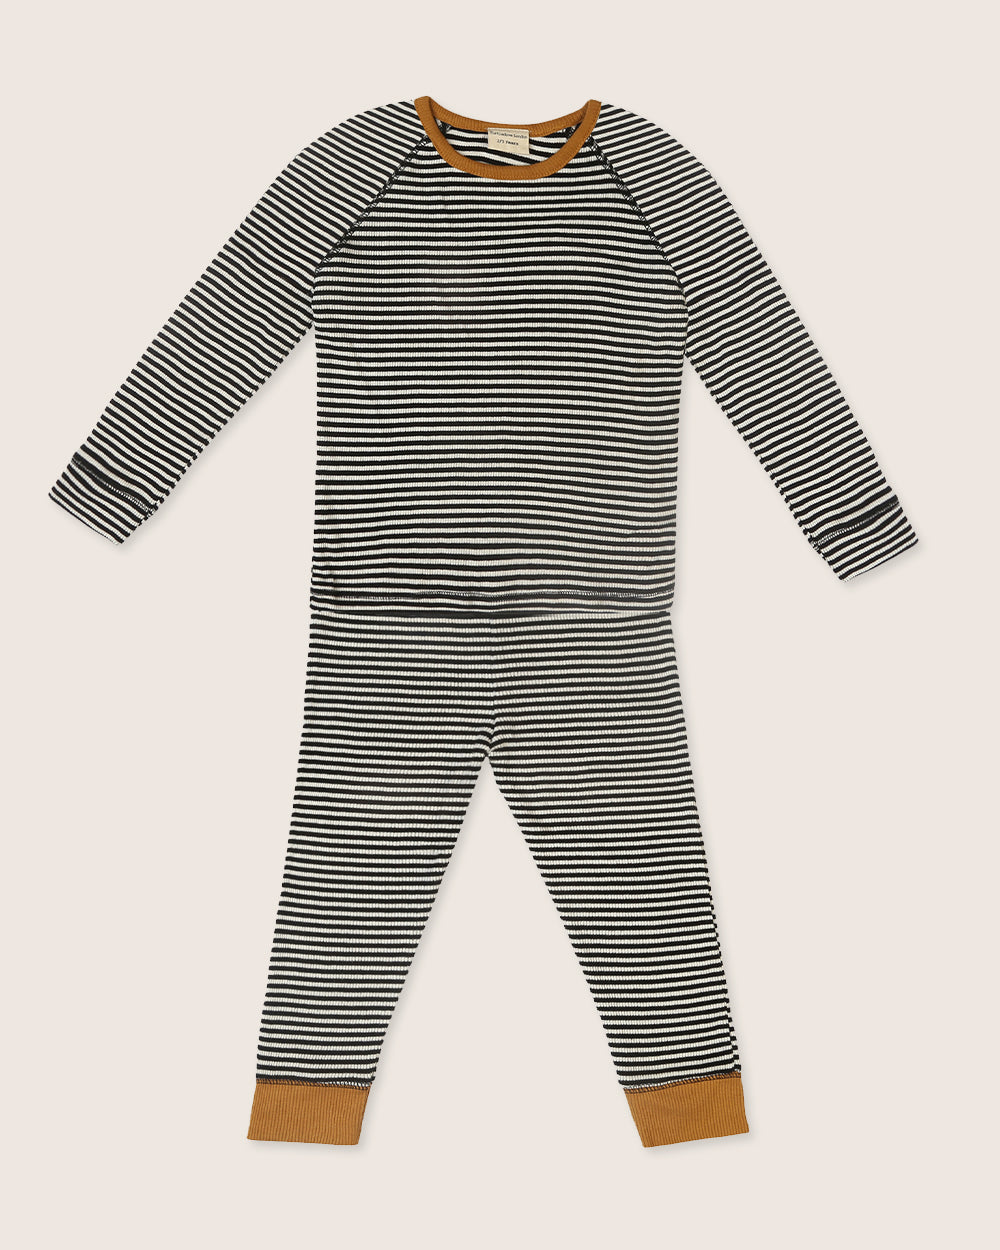 Stripe kids pyjamas